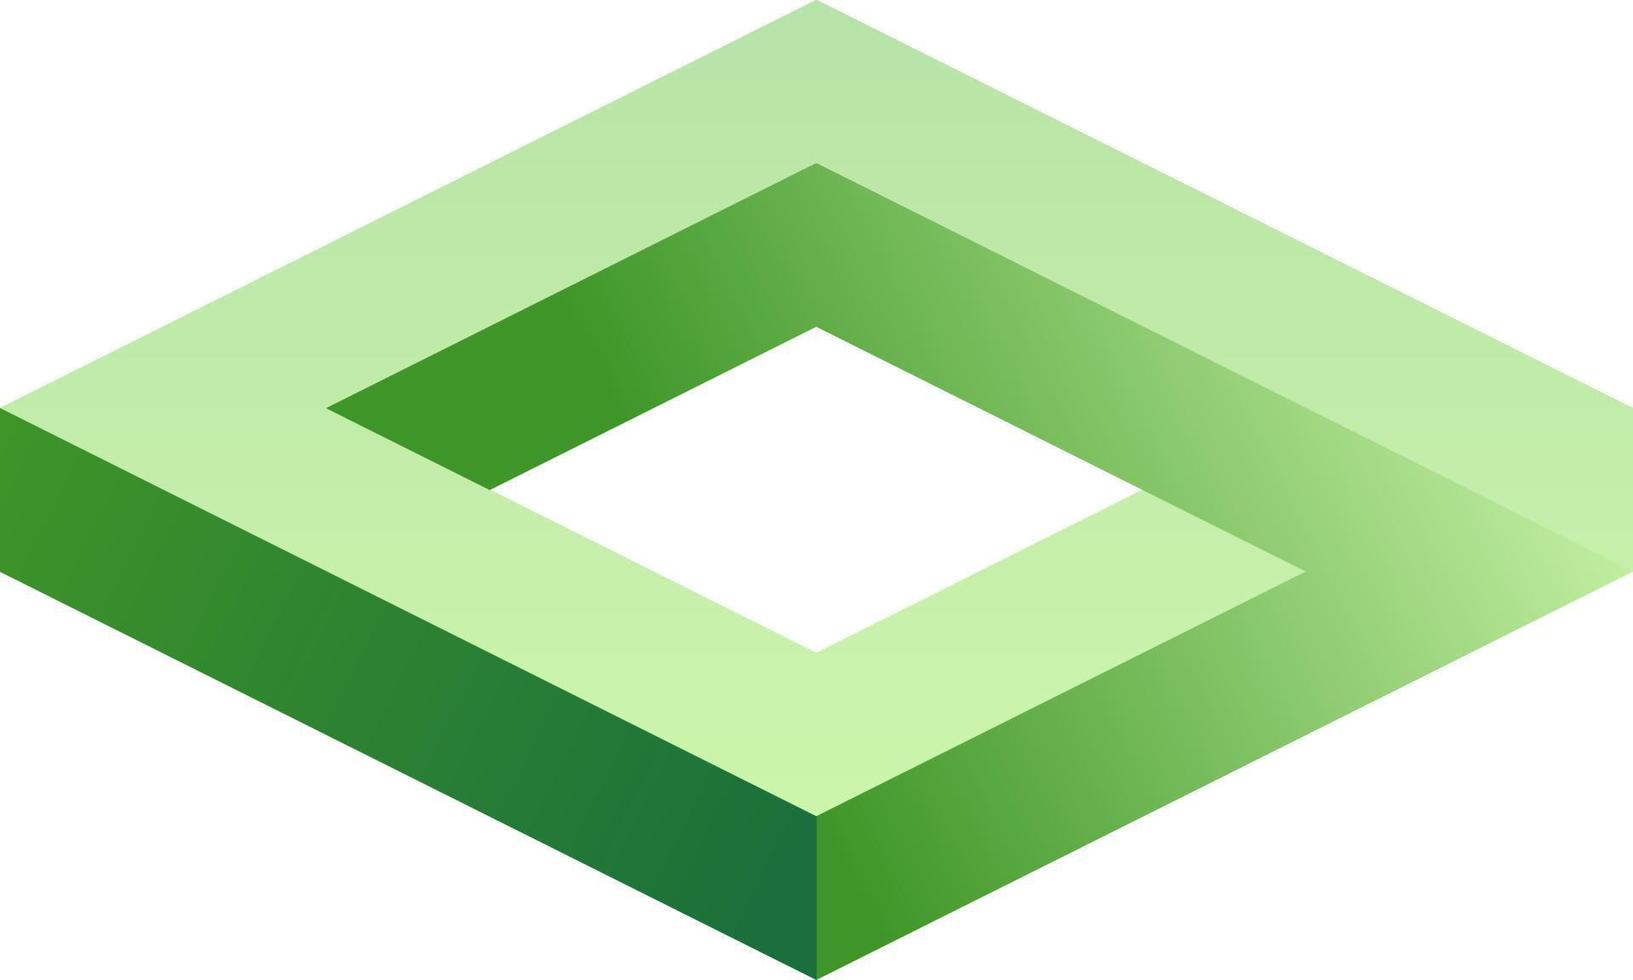 omöjlig form av kub. optisk illusion av grön kub. vektor illustration av fyrkant. 3d illusion geometrisk låda för design grafisk, logotyp, symbol, utbildning eller konst